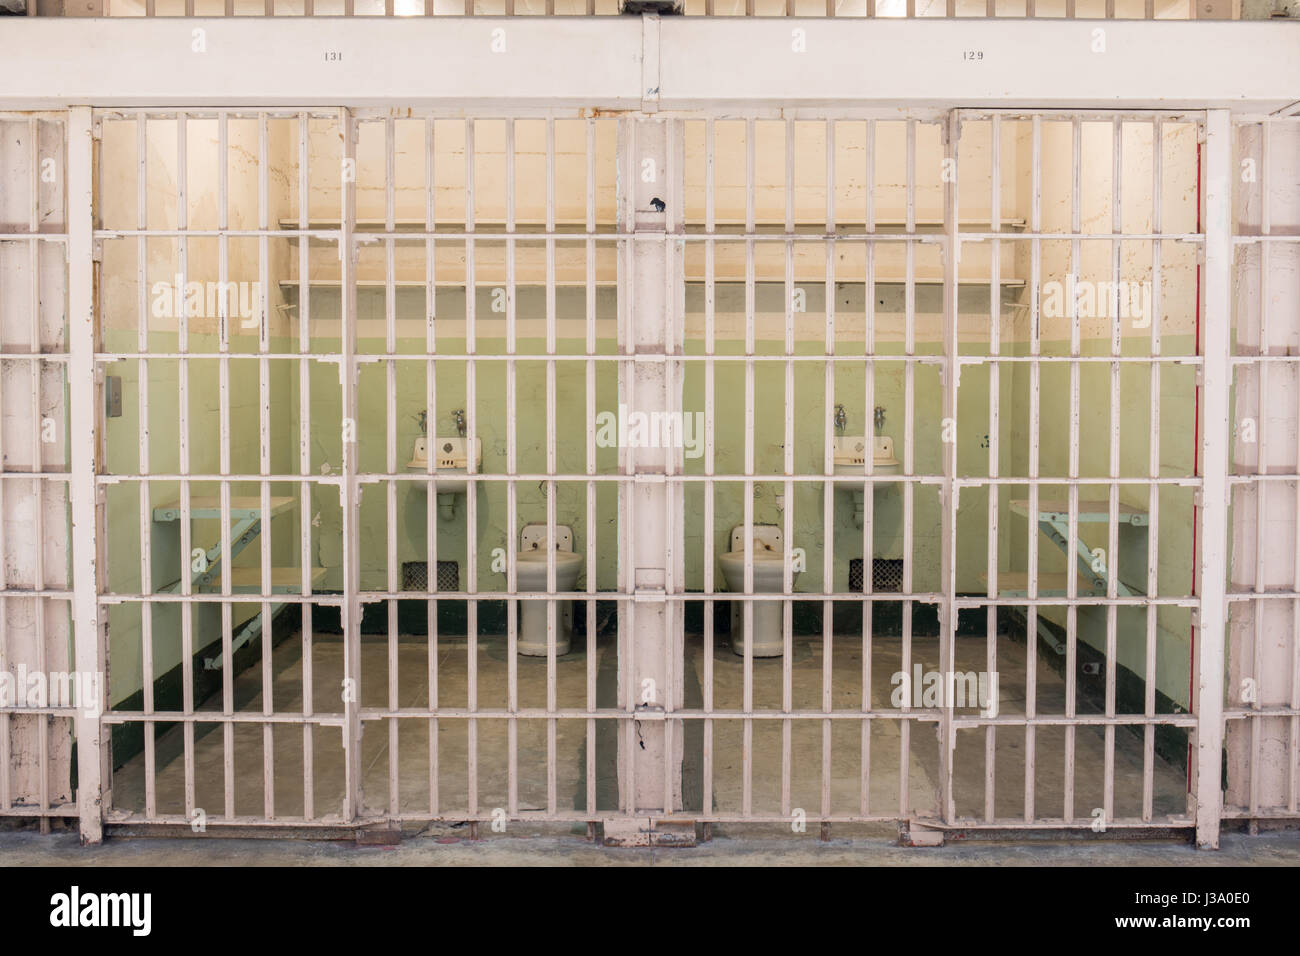 San Francisco, California, Vereinigte Staaten von Amerika - 30. April 2017: benachbarte Zellen des Gefängnis Alcatraz. Stockfoto